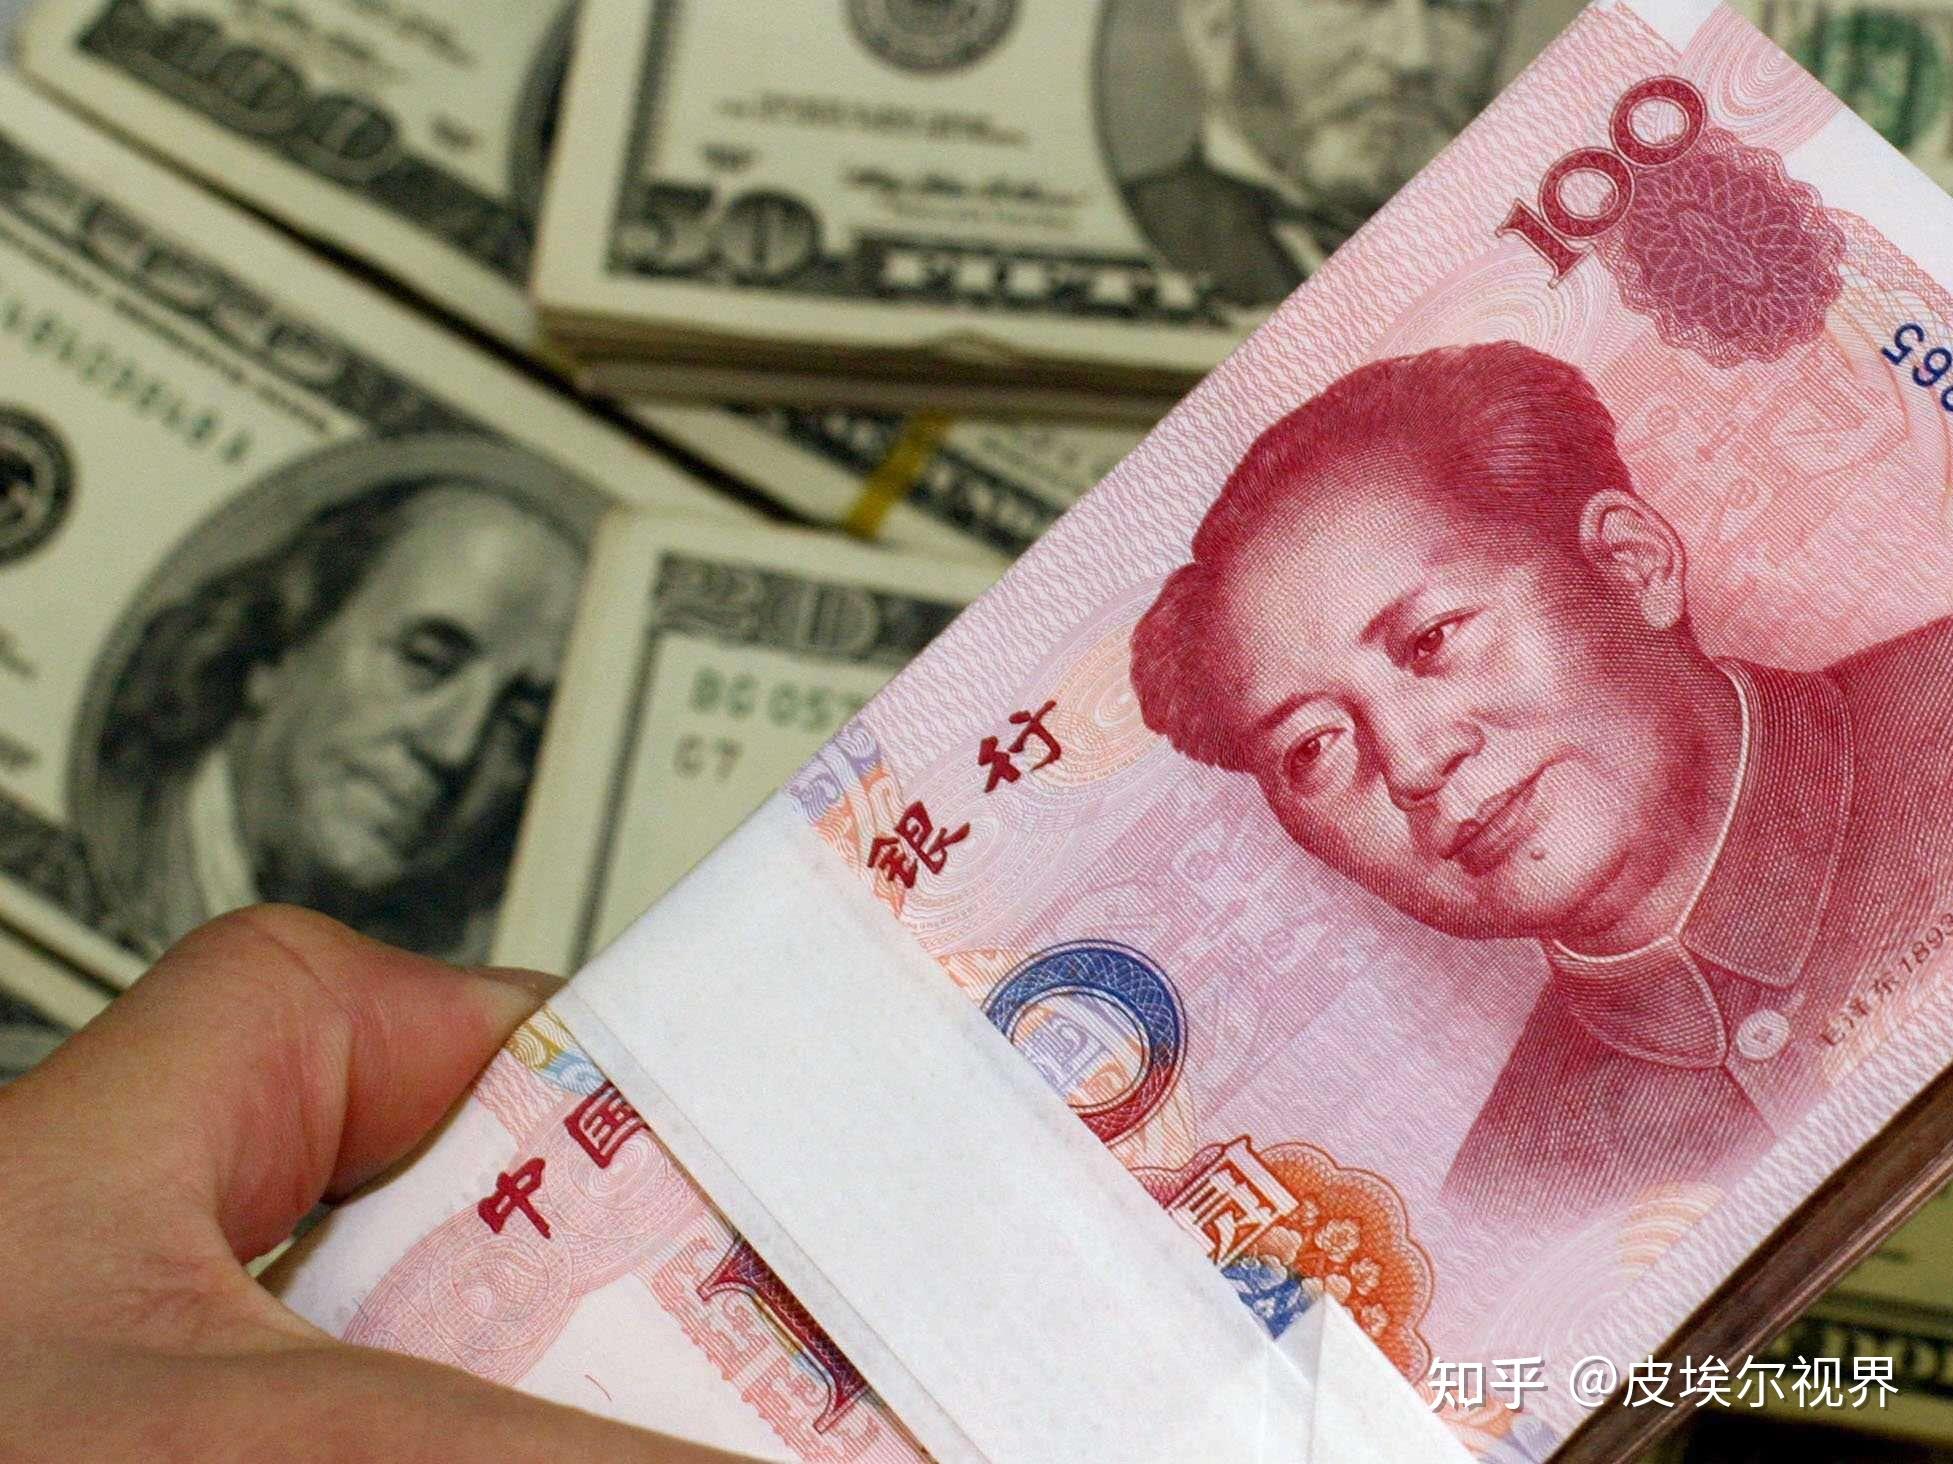 02 人民币汇率走强,中国资产吸引力逐步提升